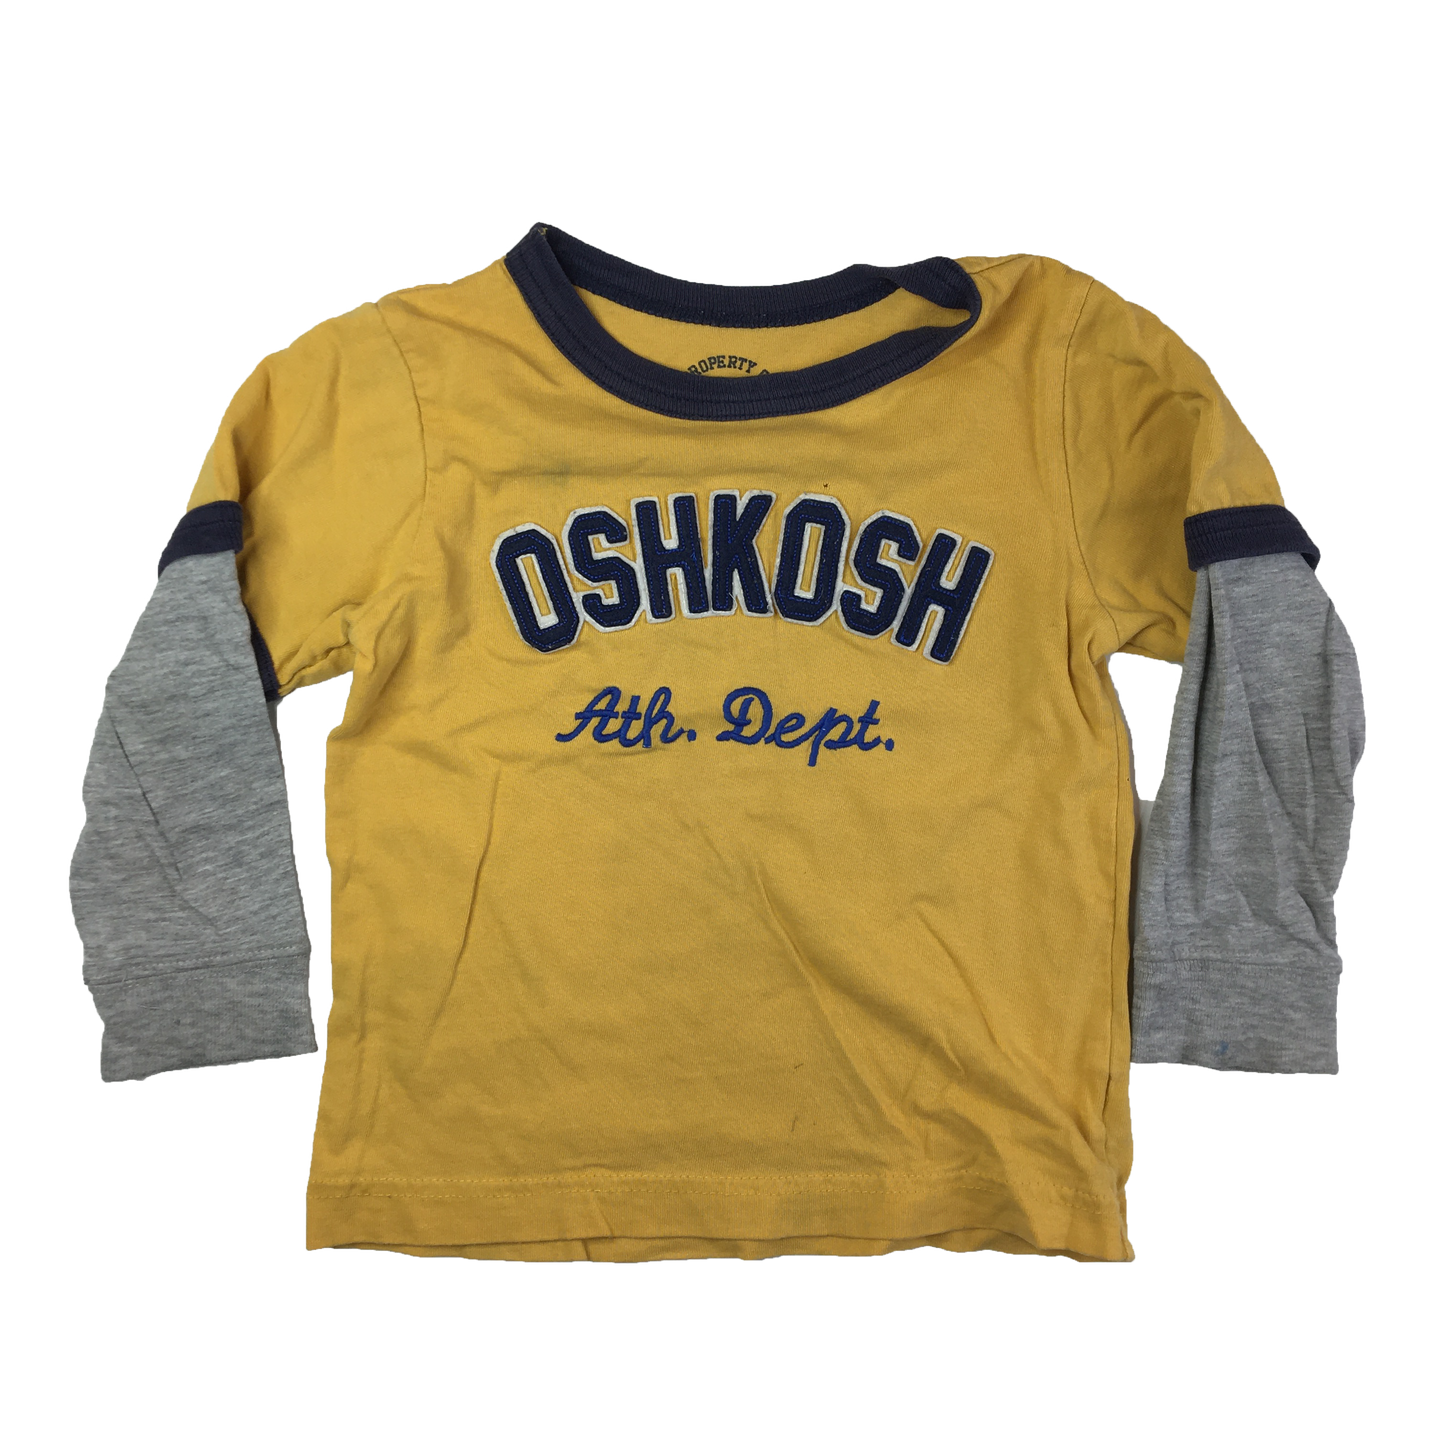 OshKosh Yellow Long Sleeve Shirt with Grey Sleeves 3T